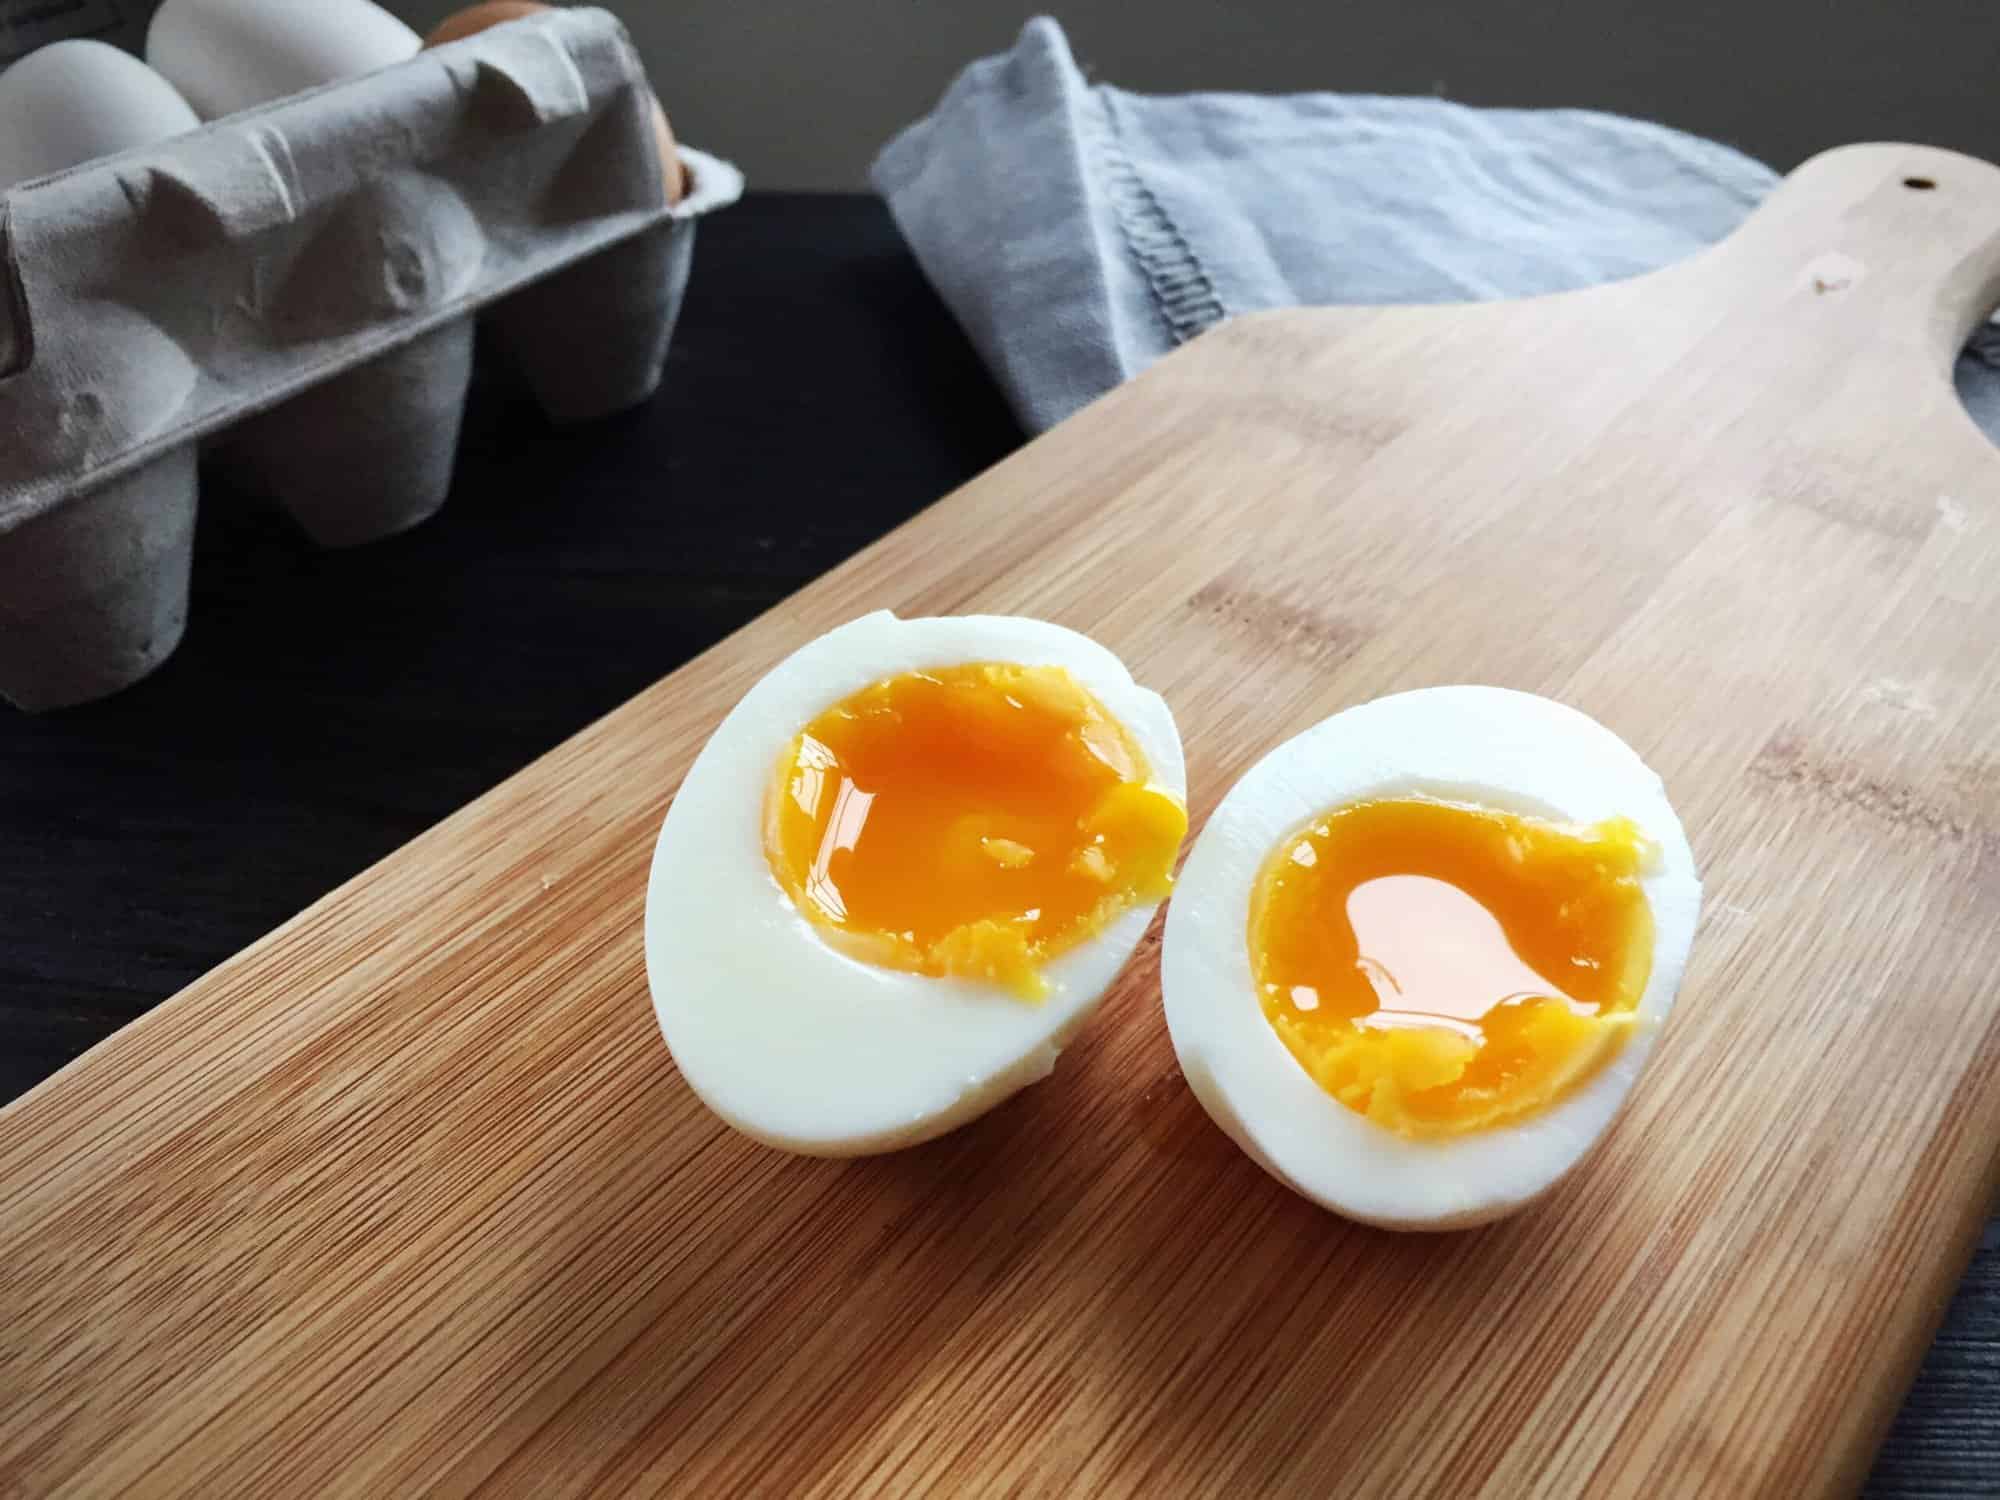 Nutritional value of egg whites vs egg yolk